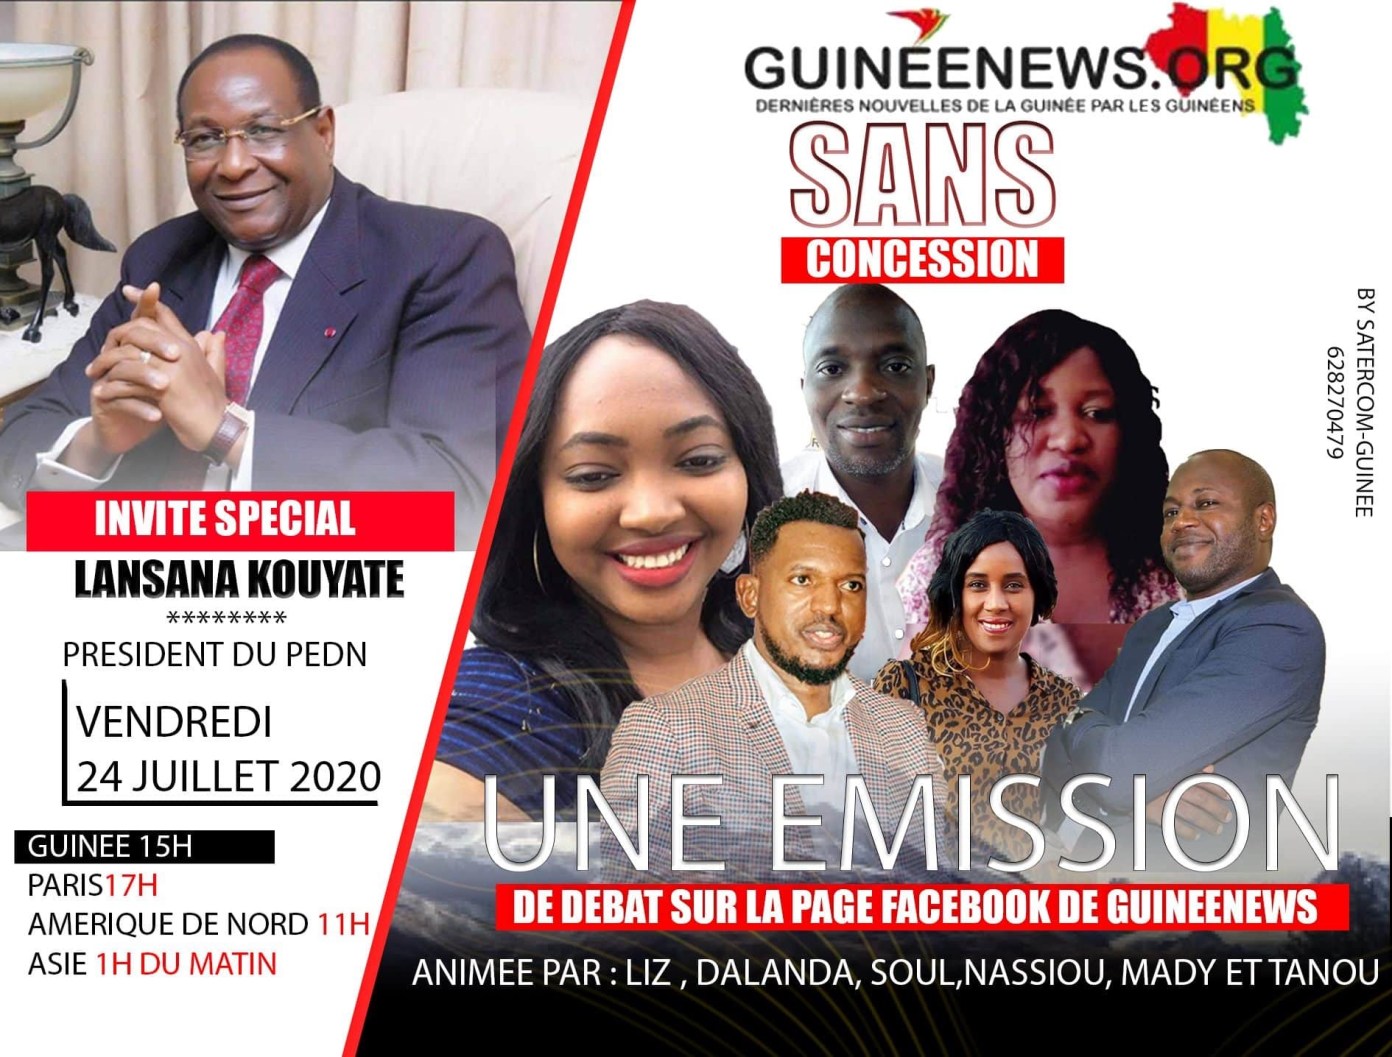 Lansana Kouyaté, président du PEDN à l’émission sans concession de Guinéenews© vendredi 24 juillet à 15h GMT